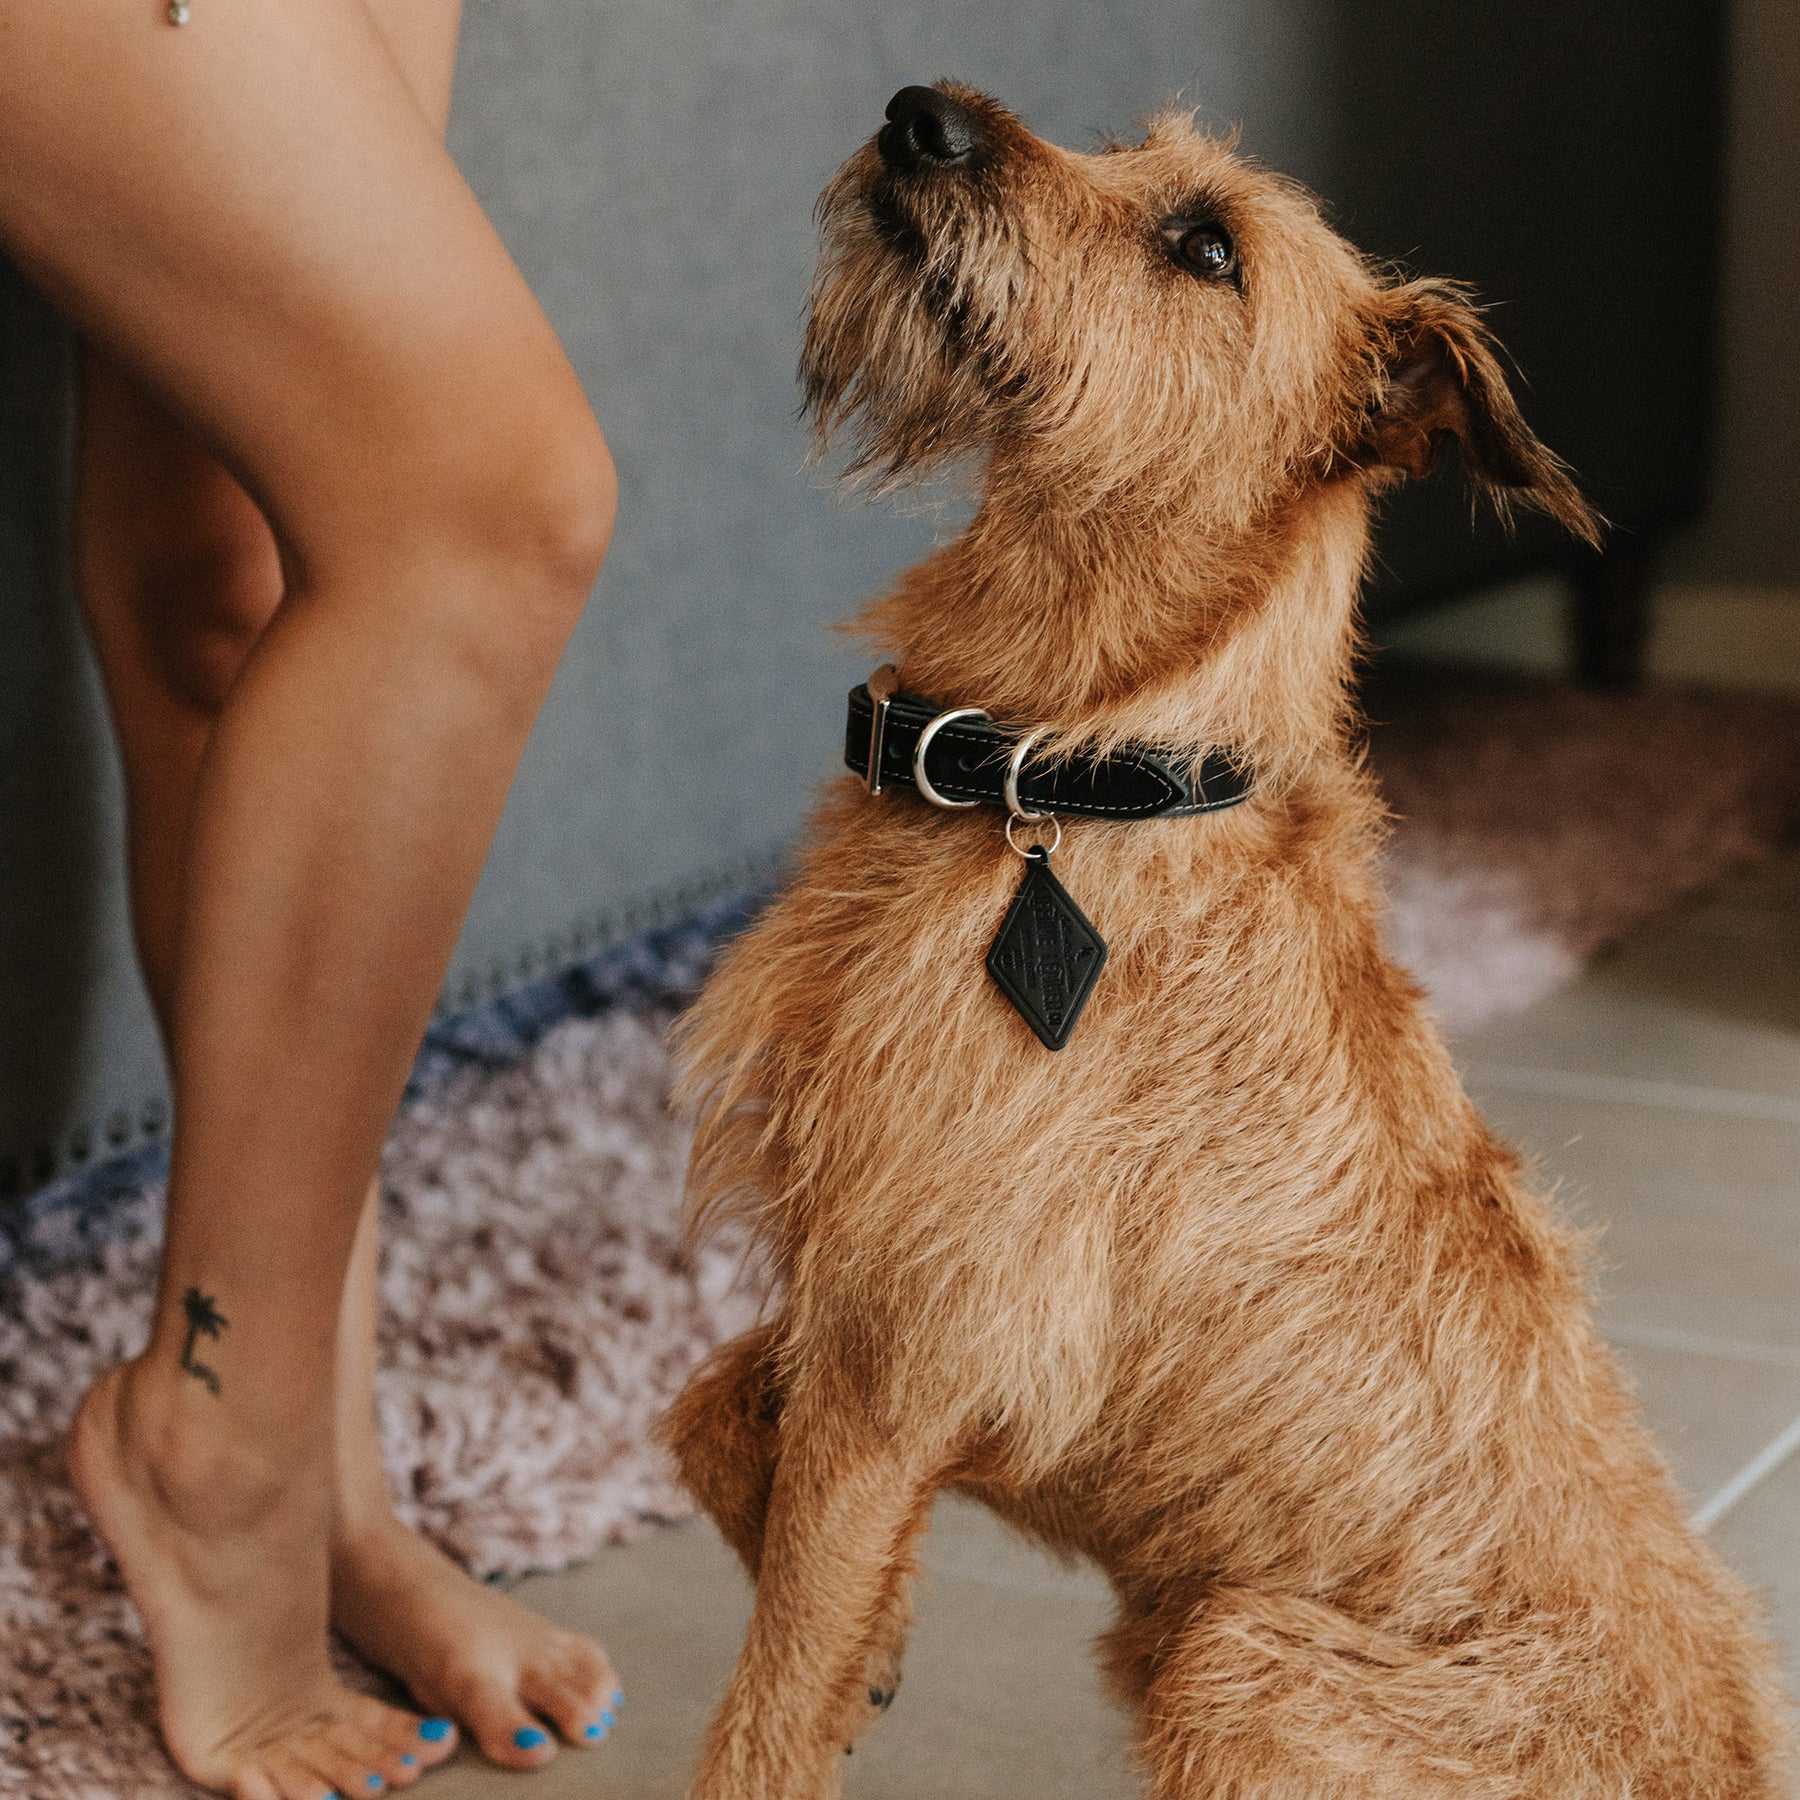 Blue - Luxury Designer Monogram Empreinte Leather Dog Collar